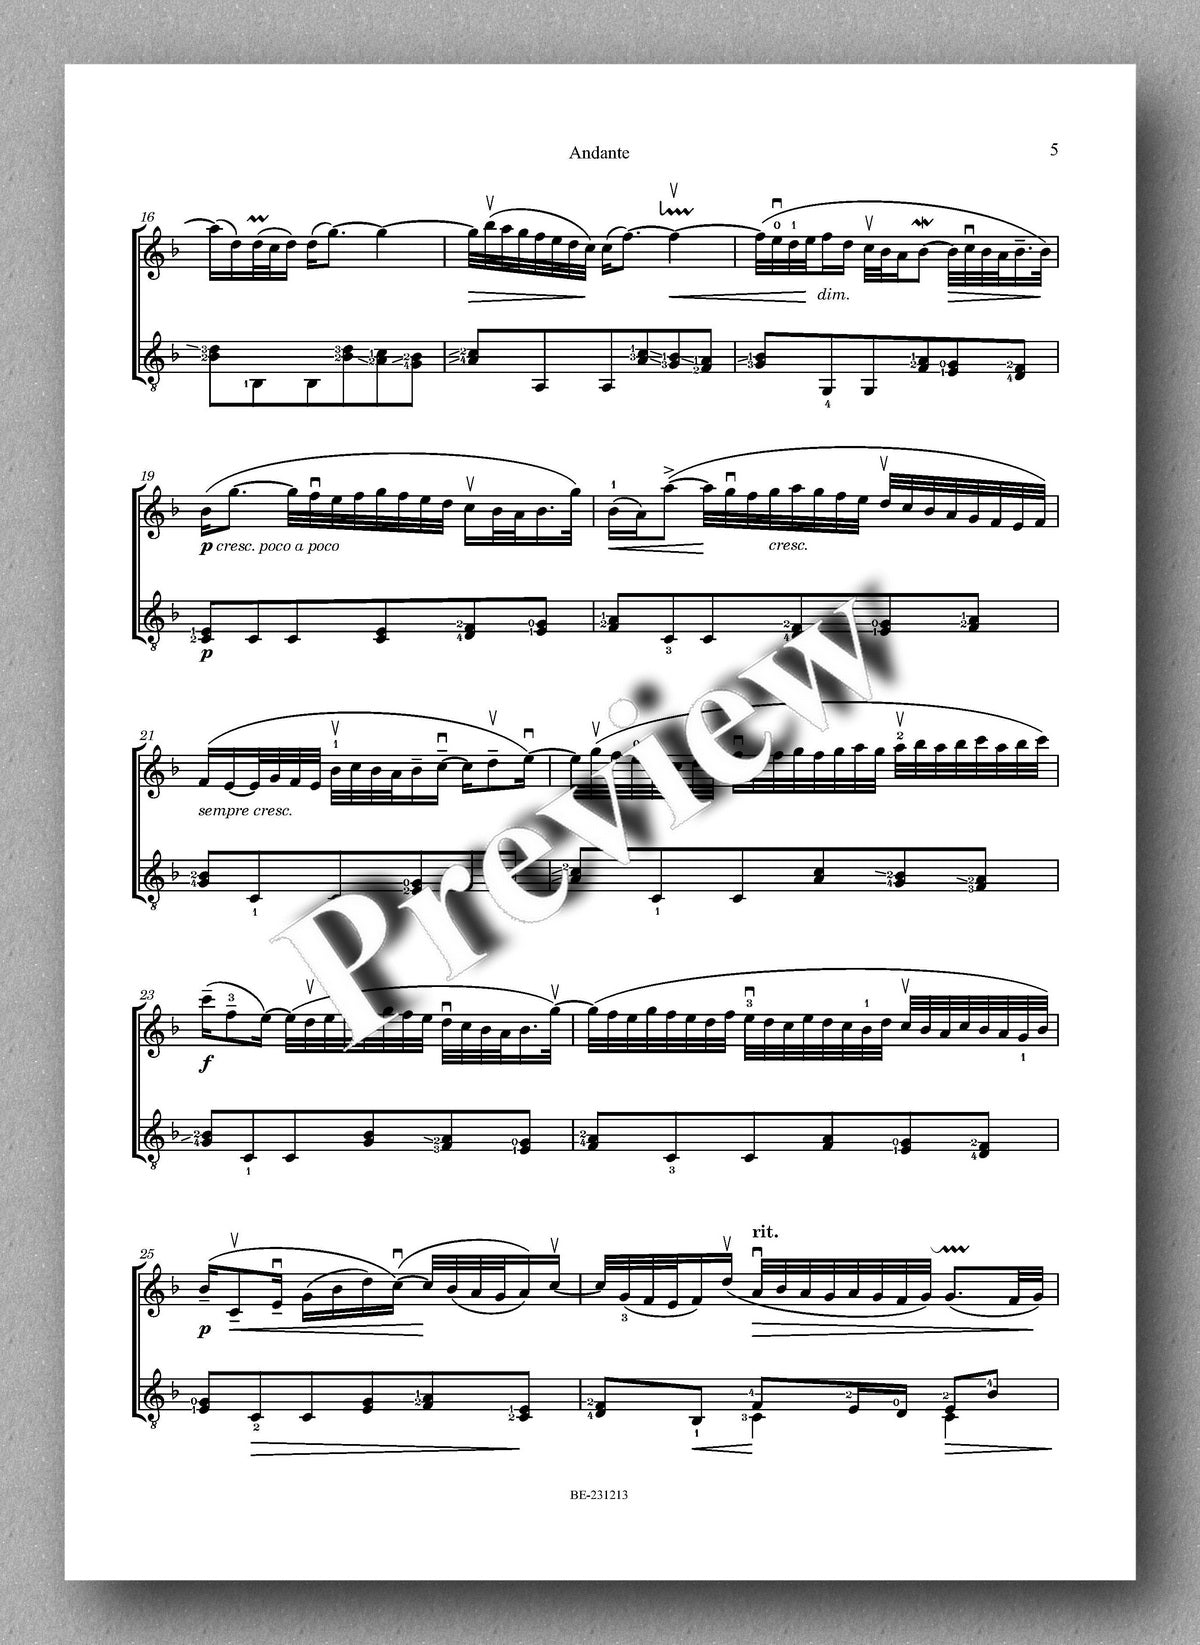 Ferdinand Rebay, Andante aus dem Italienischen Konzert von J.S. Bach - preview of the music score 2